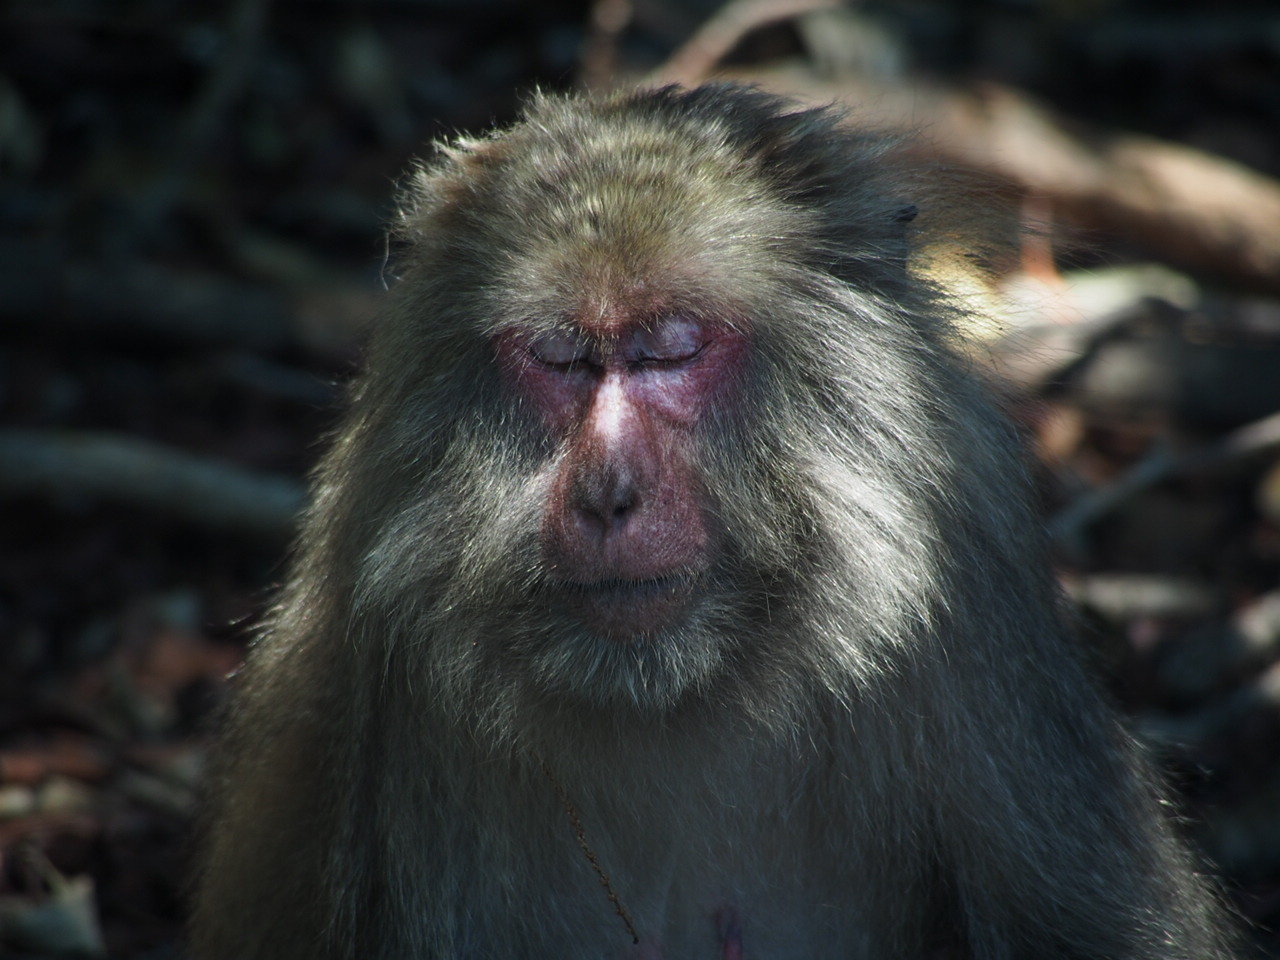 Sleeping macaque